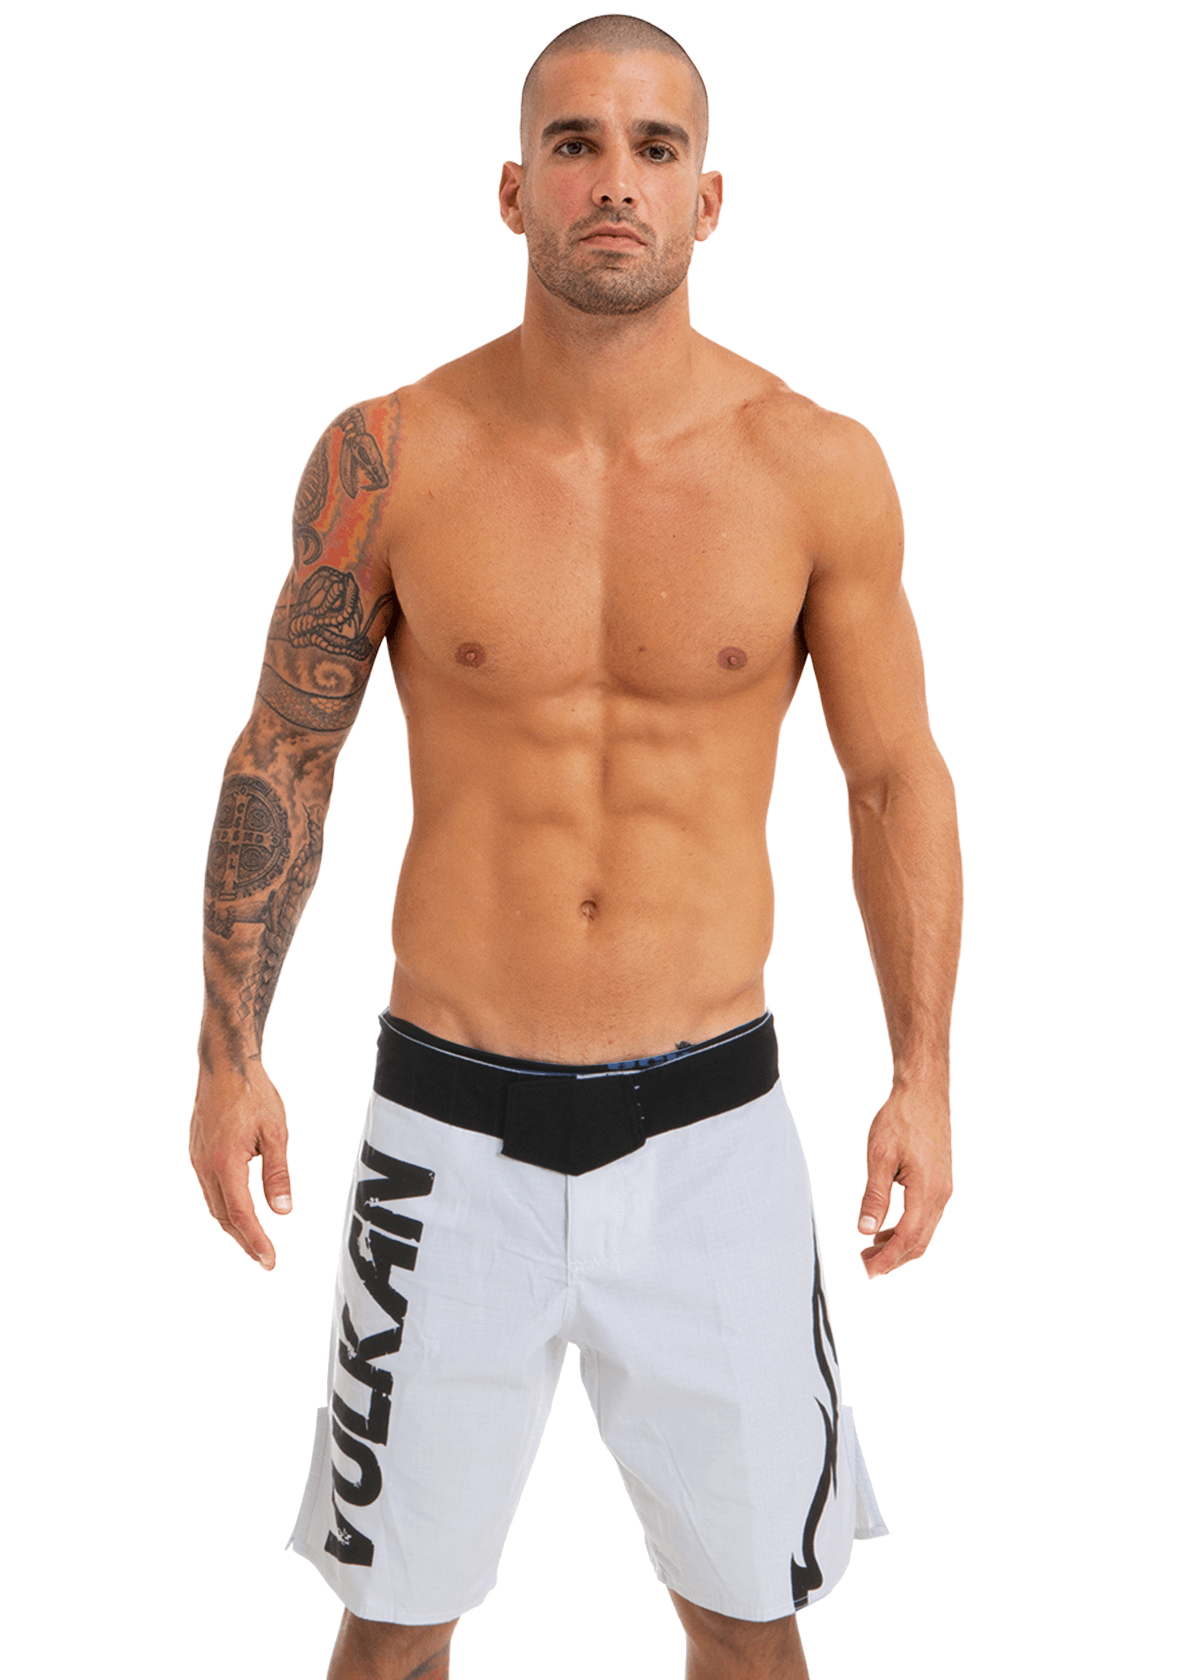 VT-X MMA Fight Shorts White/Flame